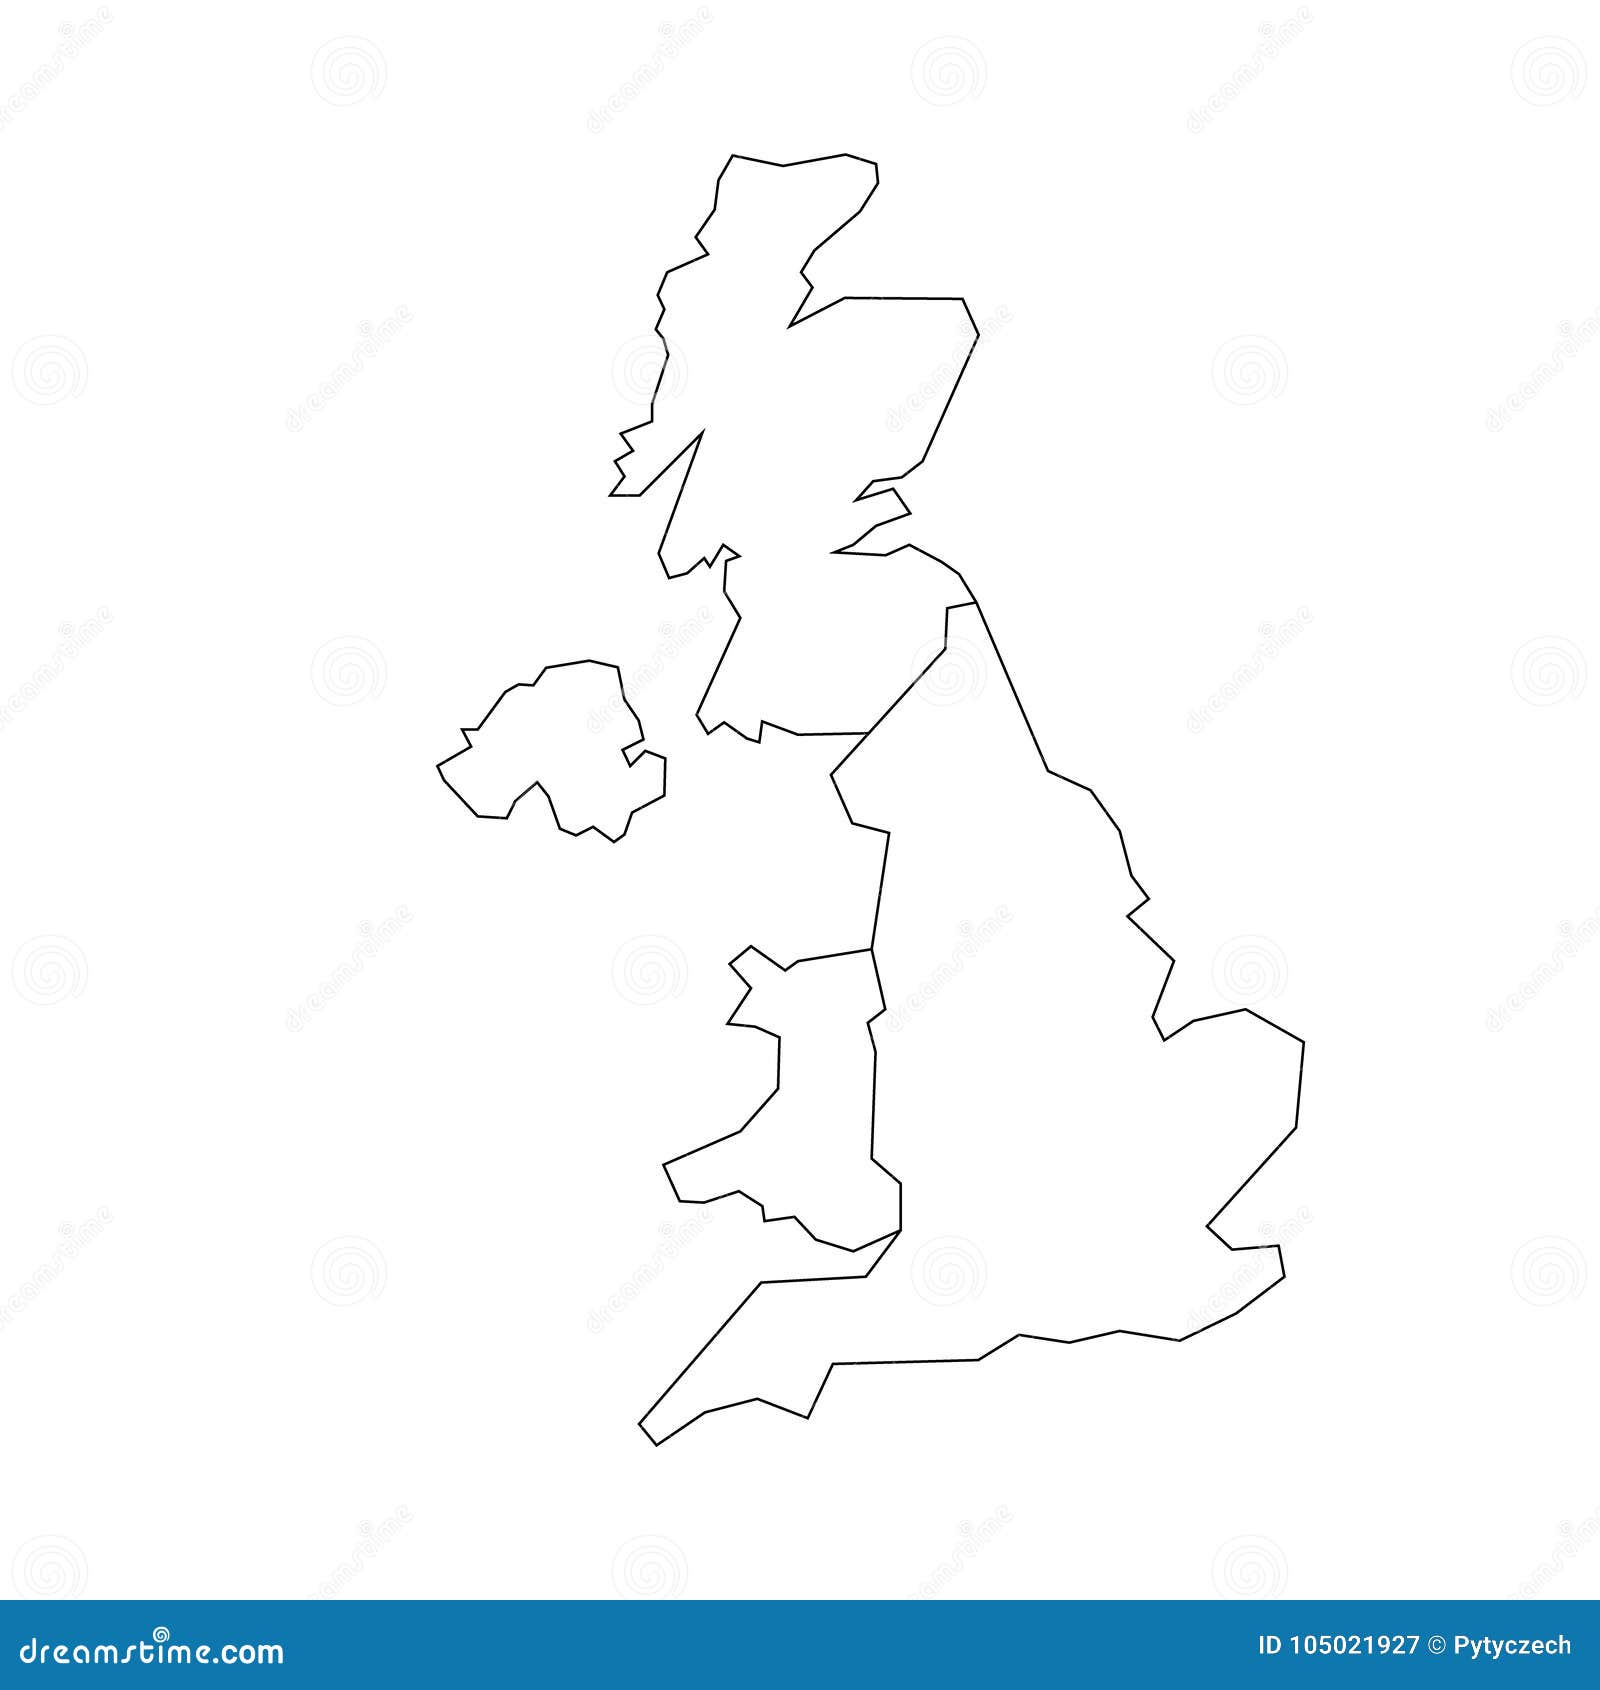 Великобритания на контурной карте. Контурная карта Великобритании. Контурная карта Шотландии. Карта Франции и Великобритании раскрасить.